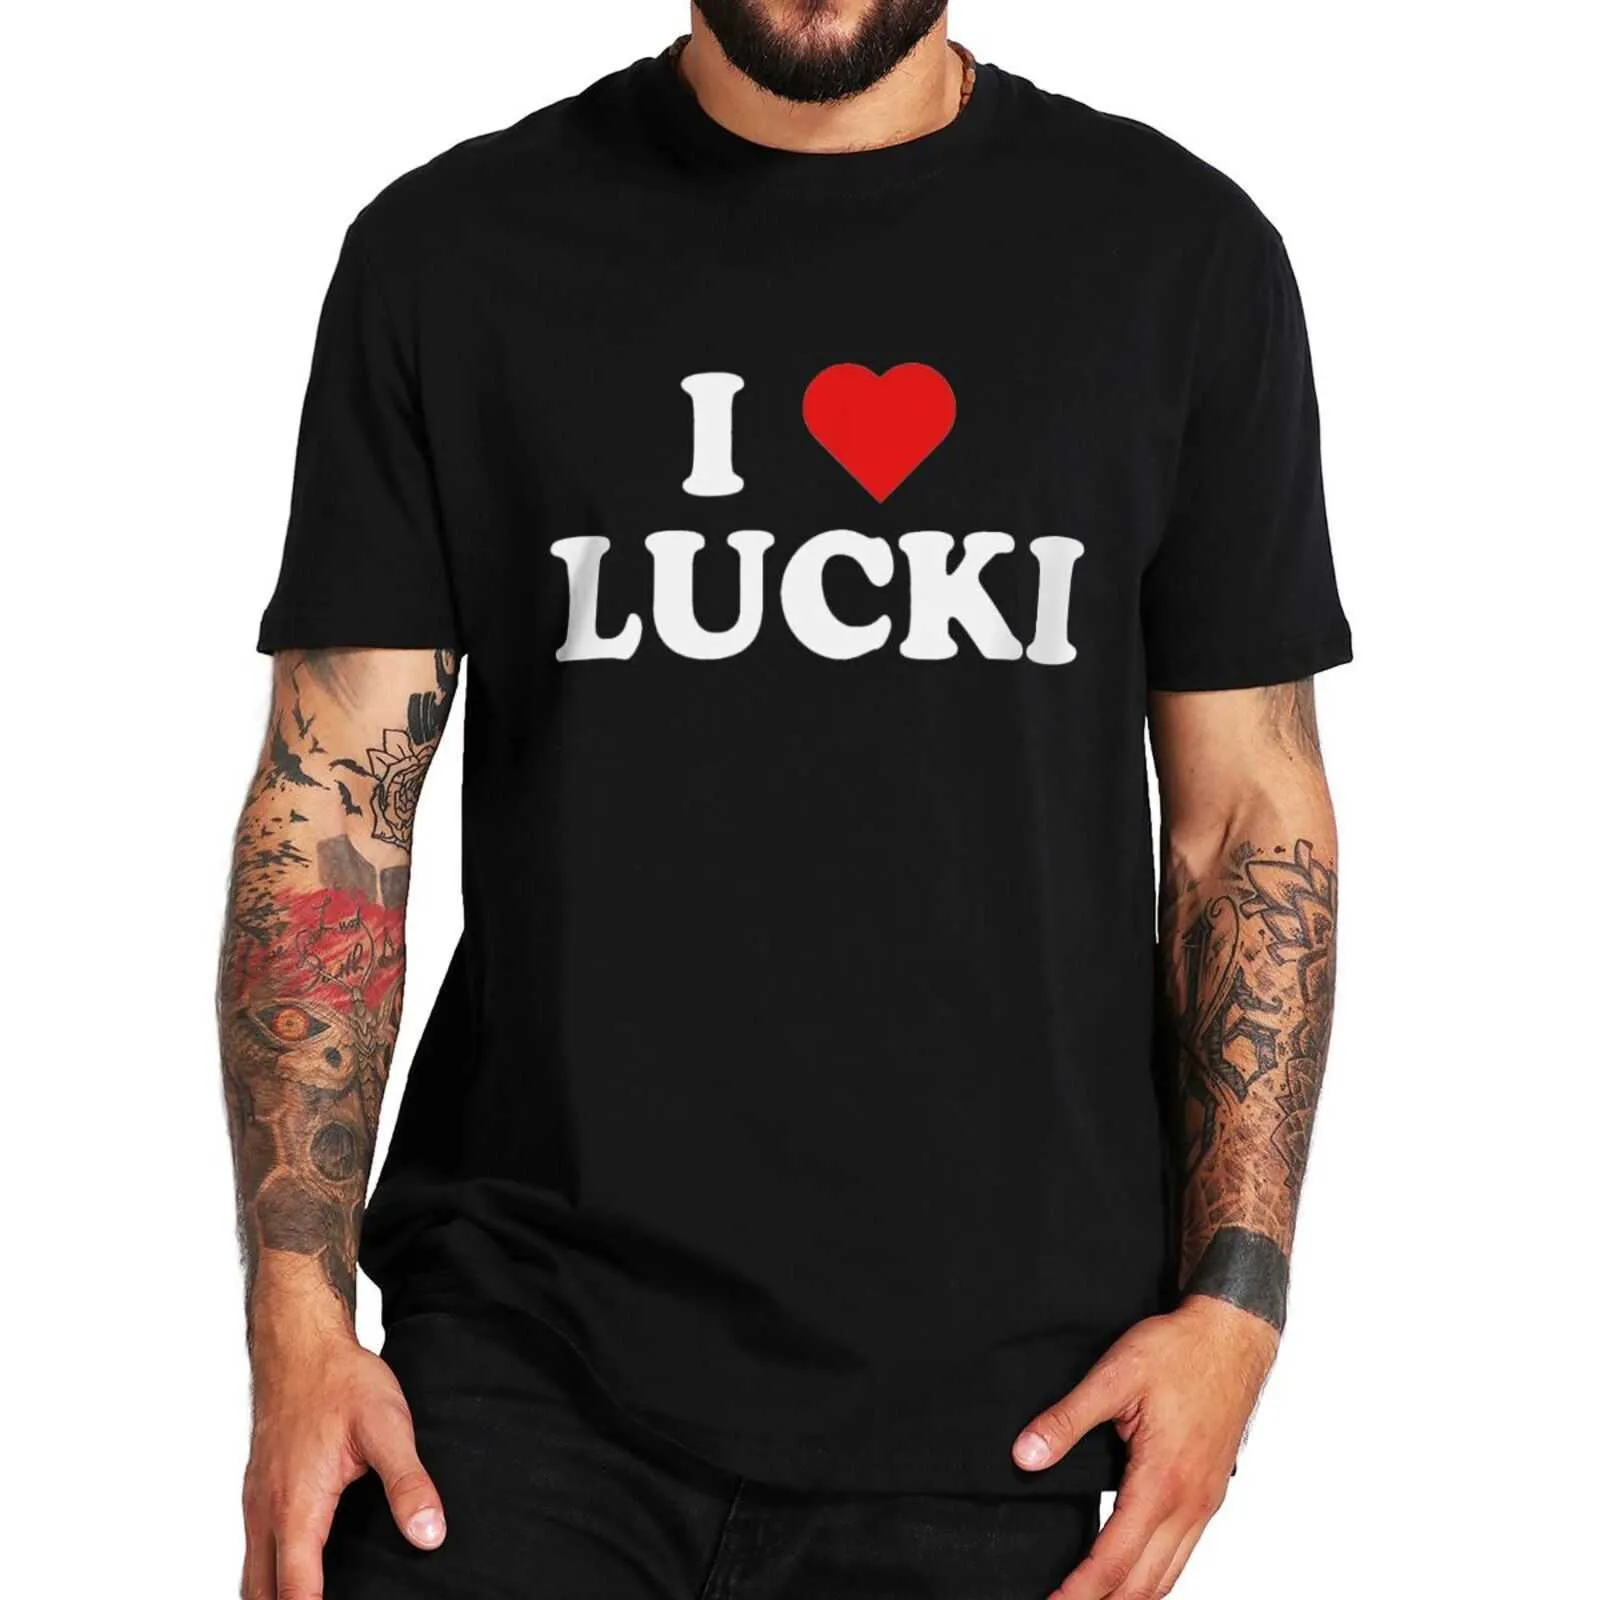 Camisetas de hombre Simone I Love Lucki camiseta música moda Casual camisetas tamaño UE 100% algodón AA230310